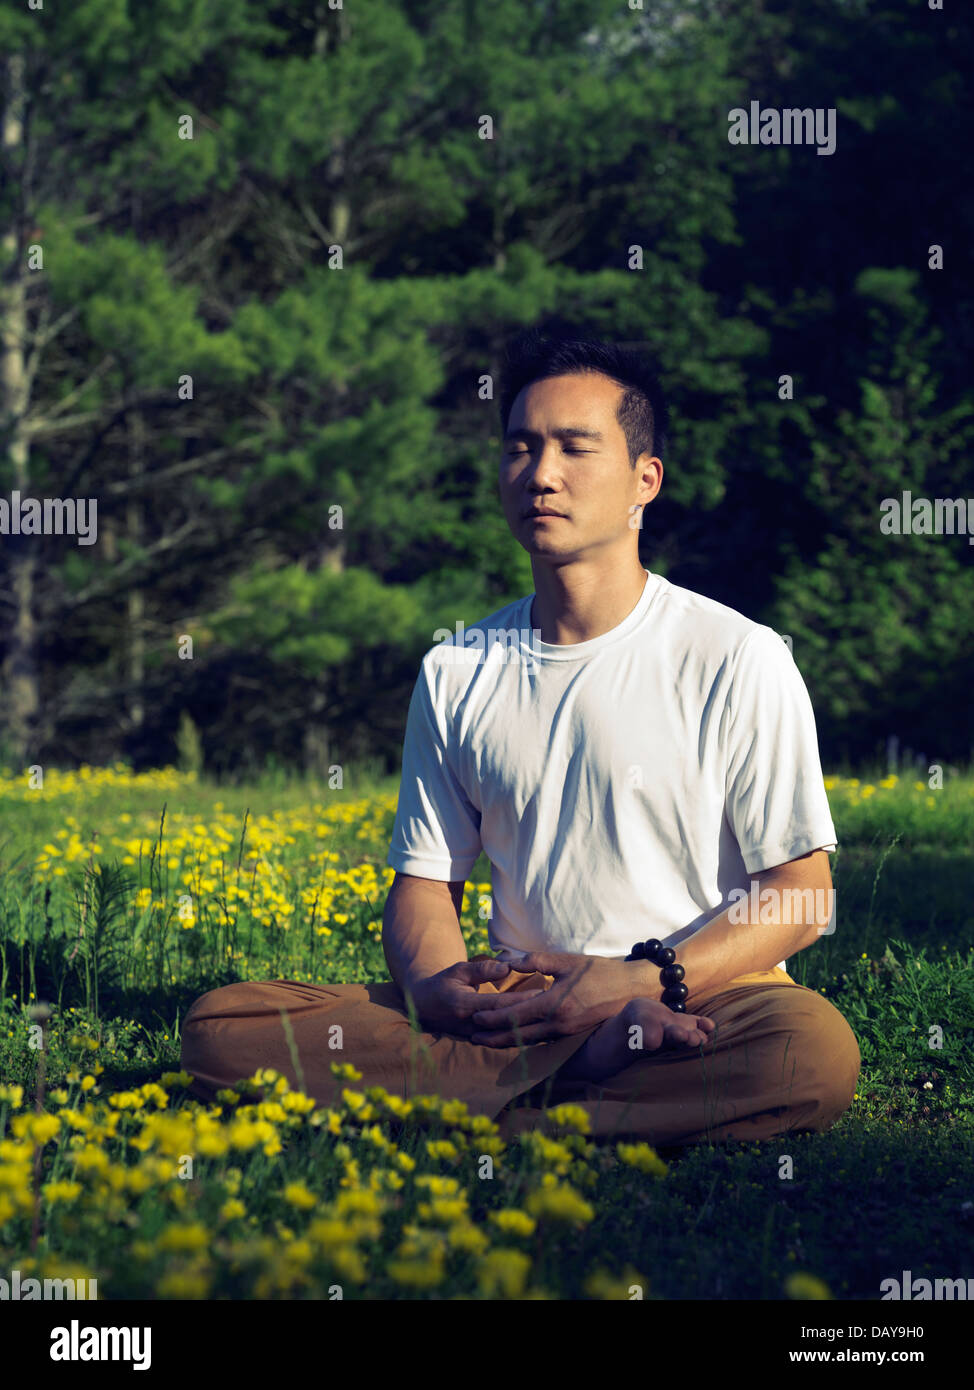 Künstlerische Outdoor-Foto von einem asiatischen Mann praktizieren chinesische buddhistische Meditation bei Sonnenaufgang im Sommer im freien Natur Landschaft Stockfoto